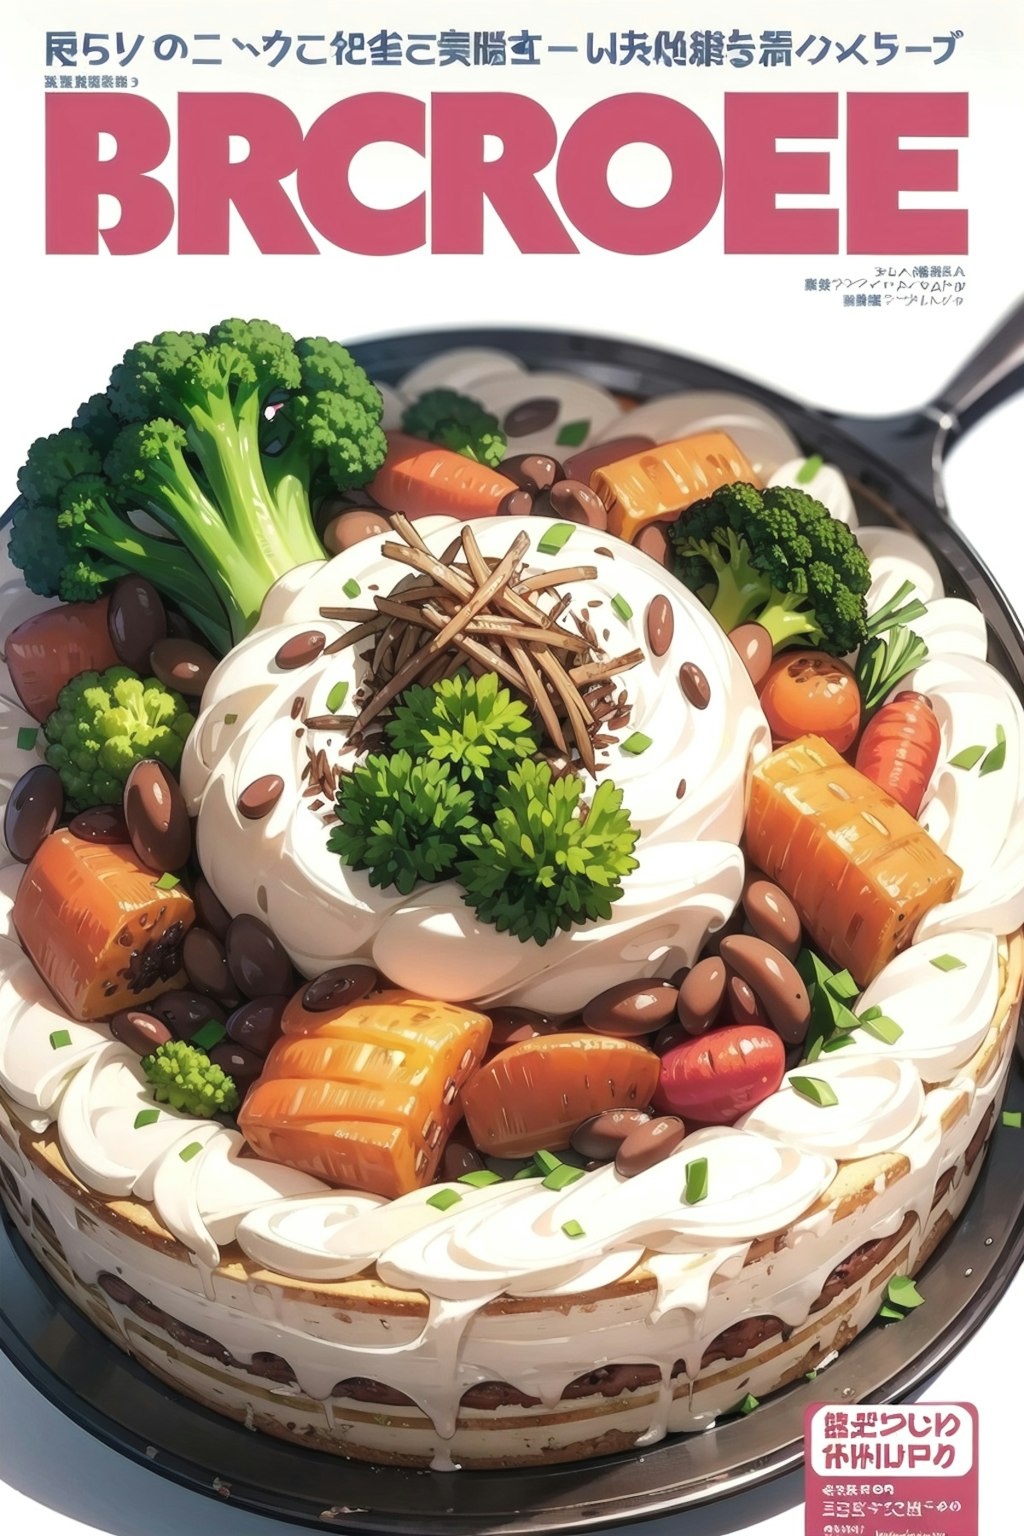 雑誌の表紙風野菜ケーキ